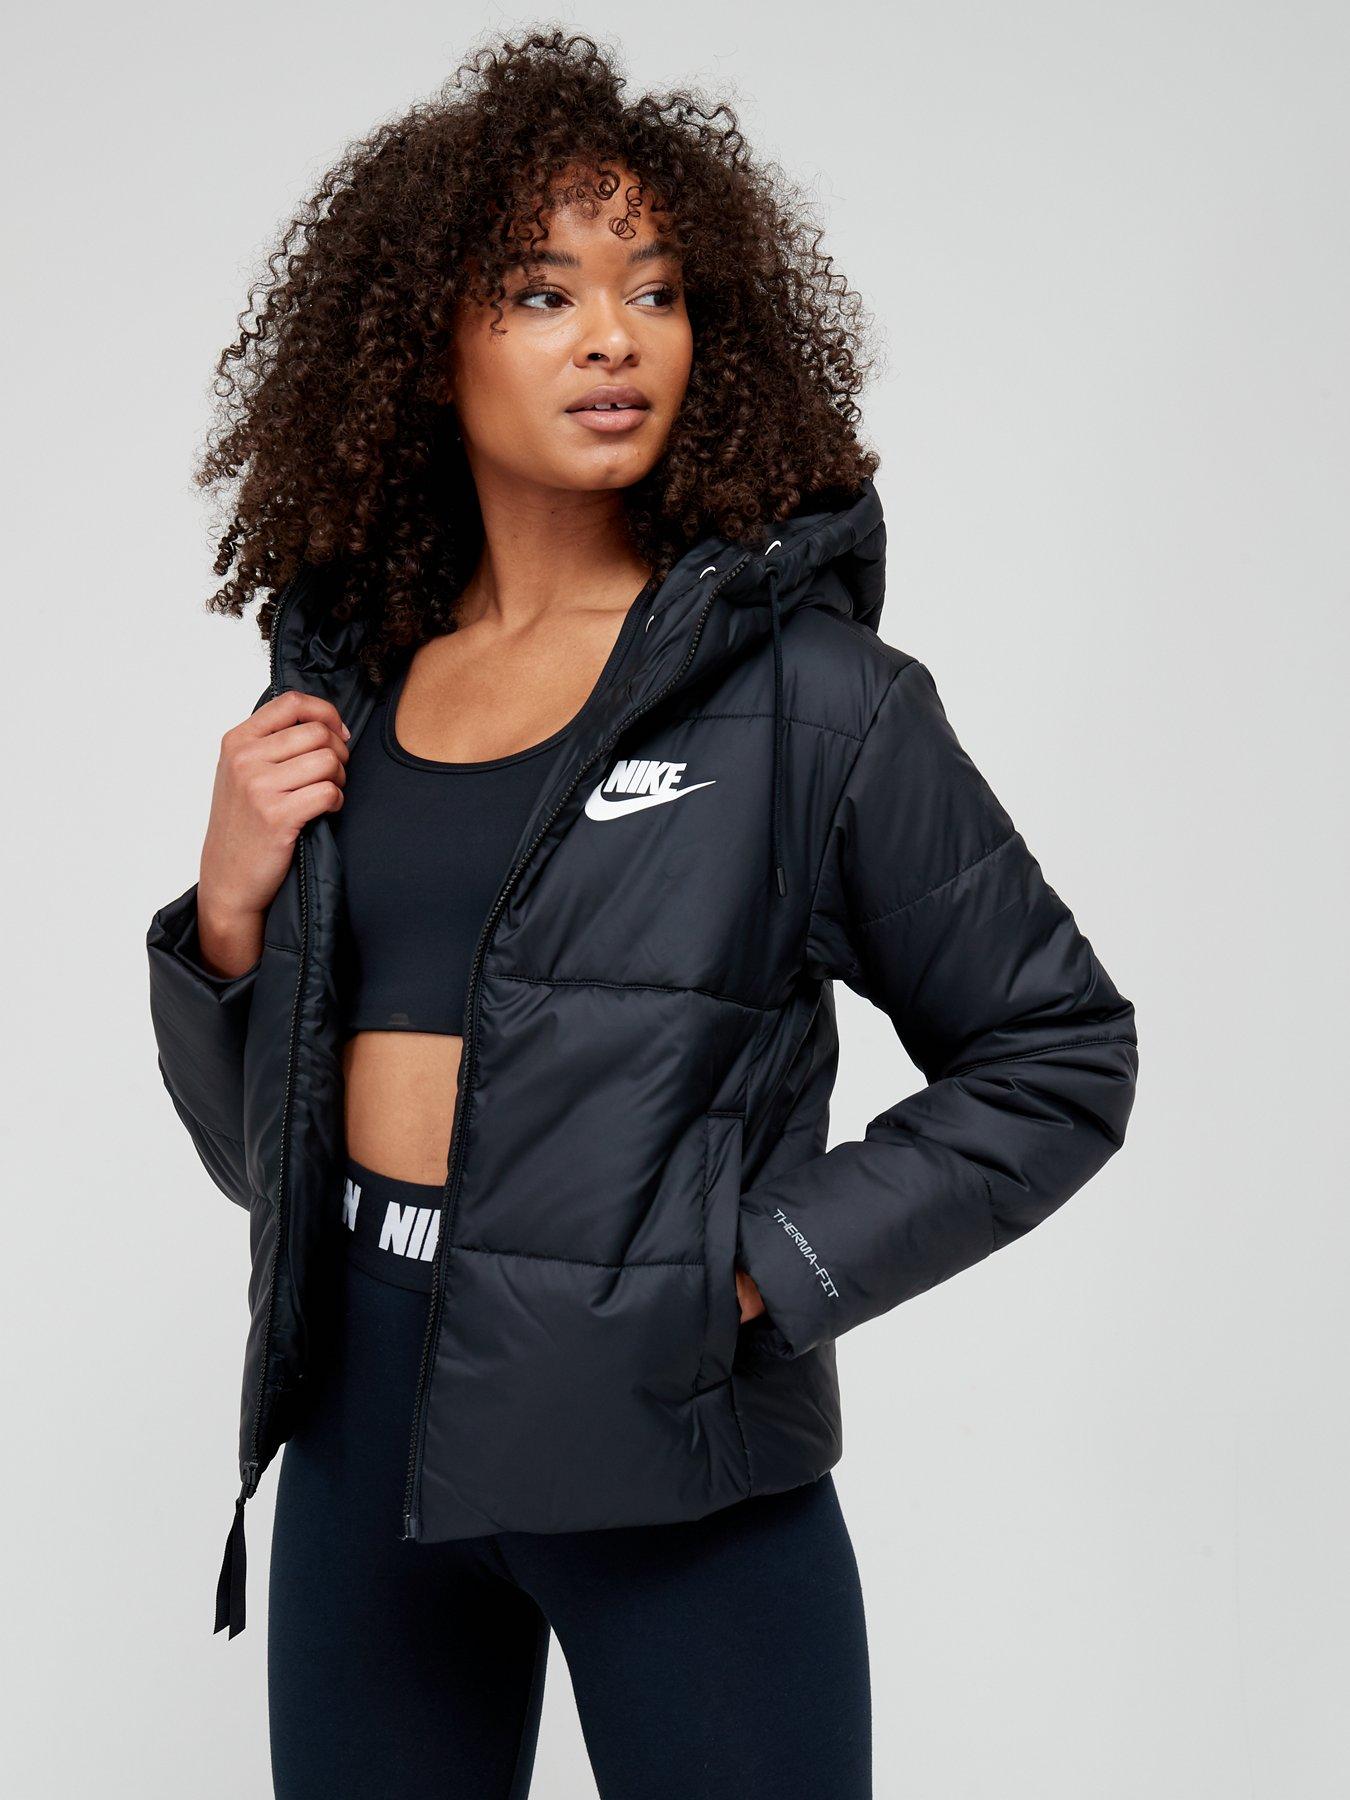 Getand handelaar verkopen Nike | Coats & jackets | Women | Very Ireland